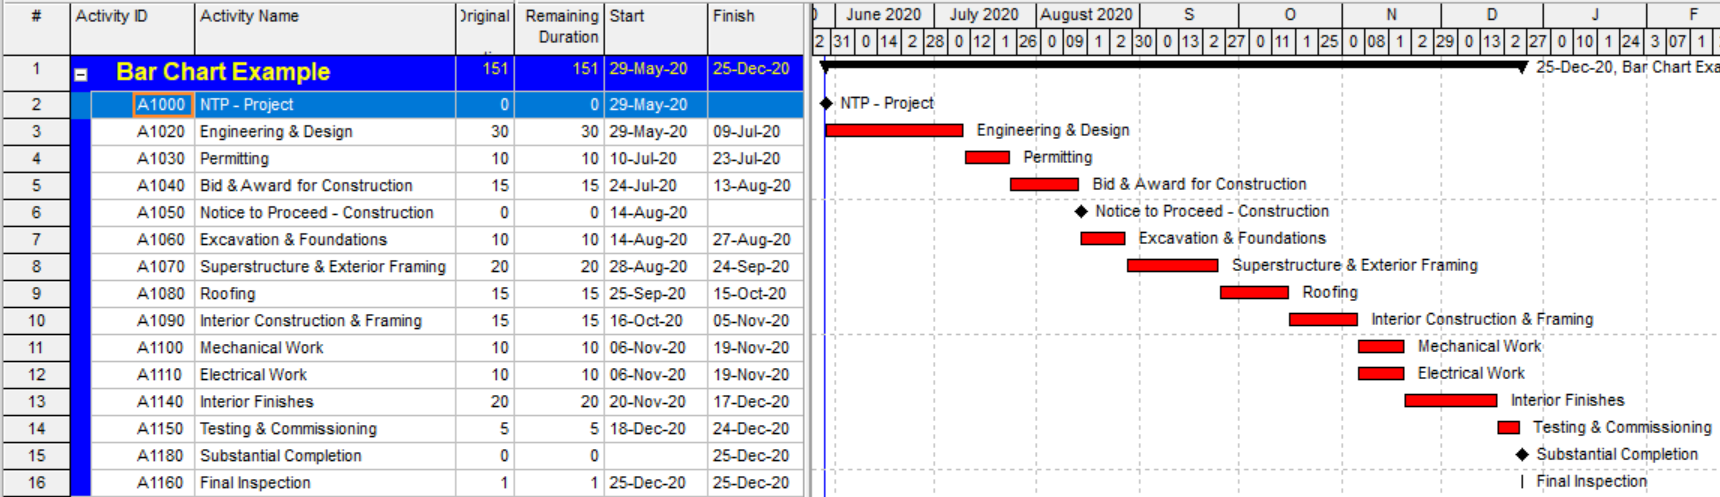 FIGURA 4 - Cronograma con filtros para mostrar la ruta más larga/crítica del proyecto